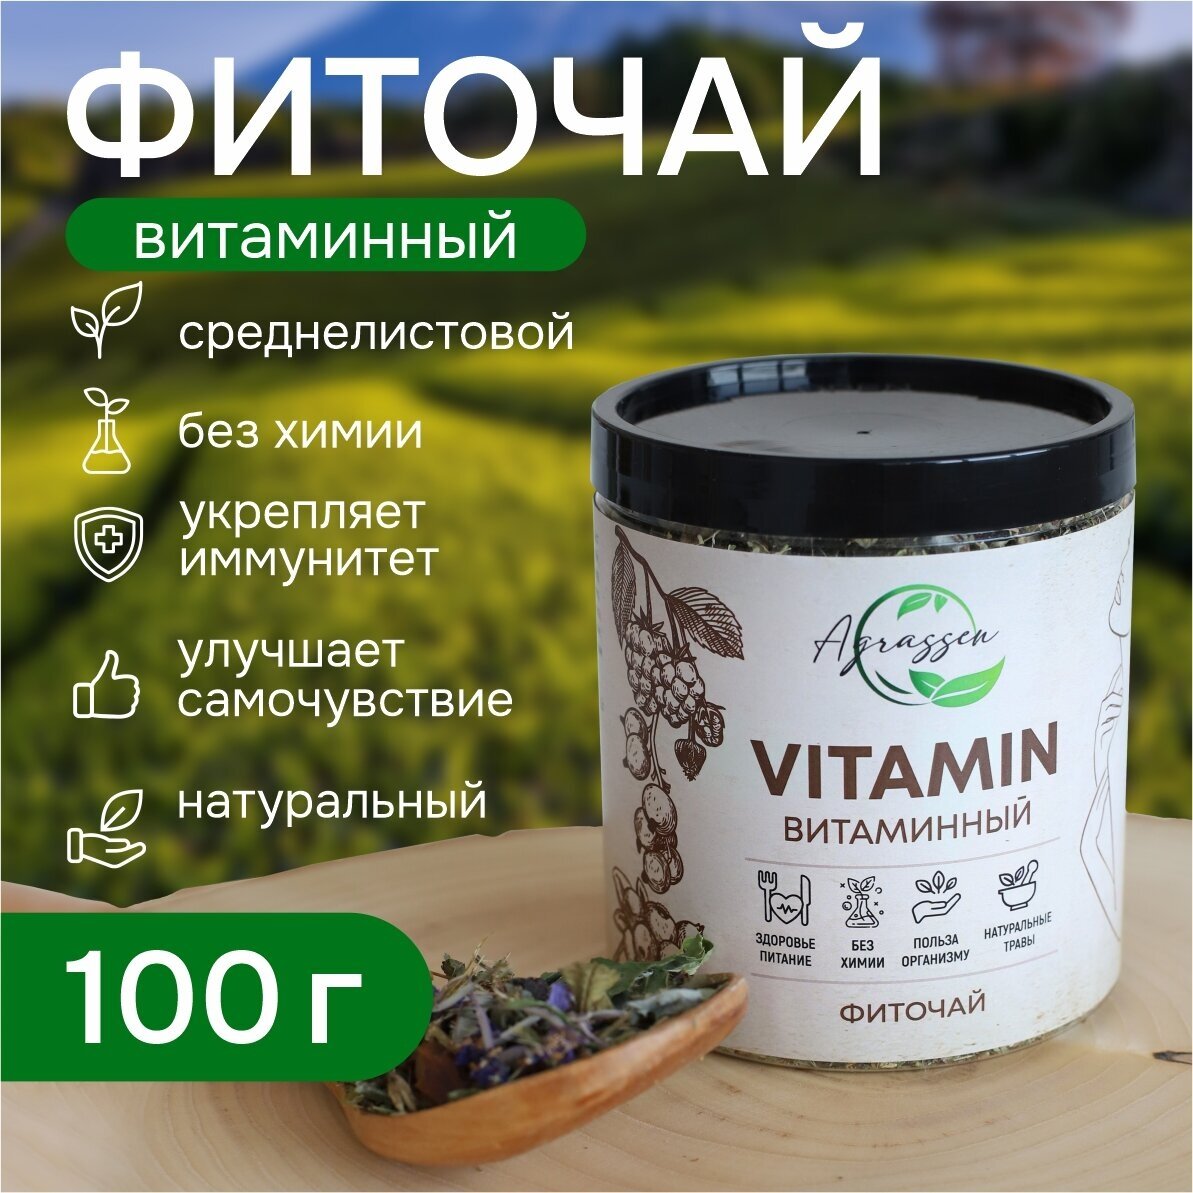 Травяной сбор «Vitamin Витаминный»/Травяной чай витаминный/Чай для иммунитета/Витаминный комплекс для кожи, волос и ногтей - фотография № 1